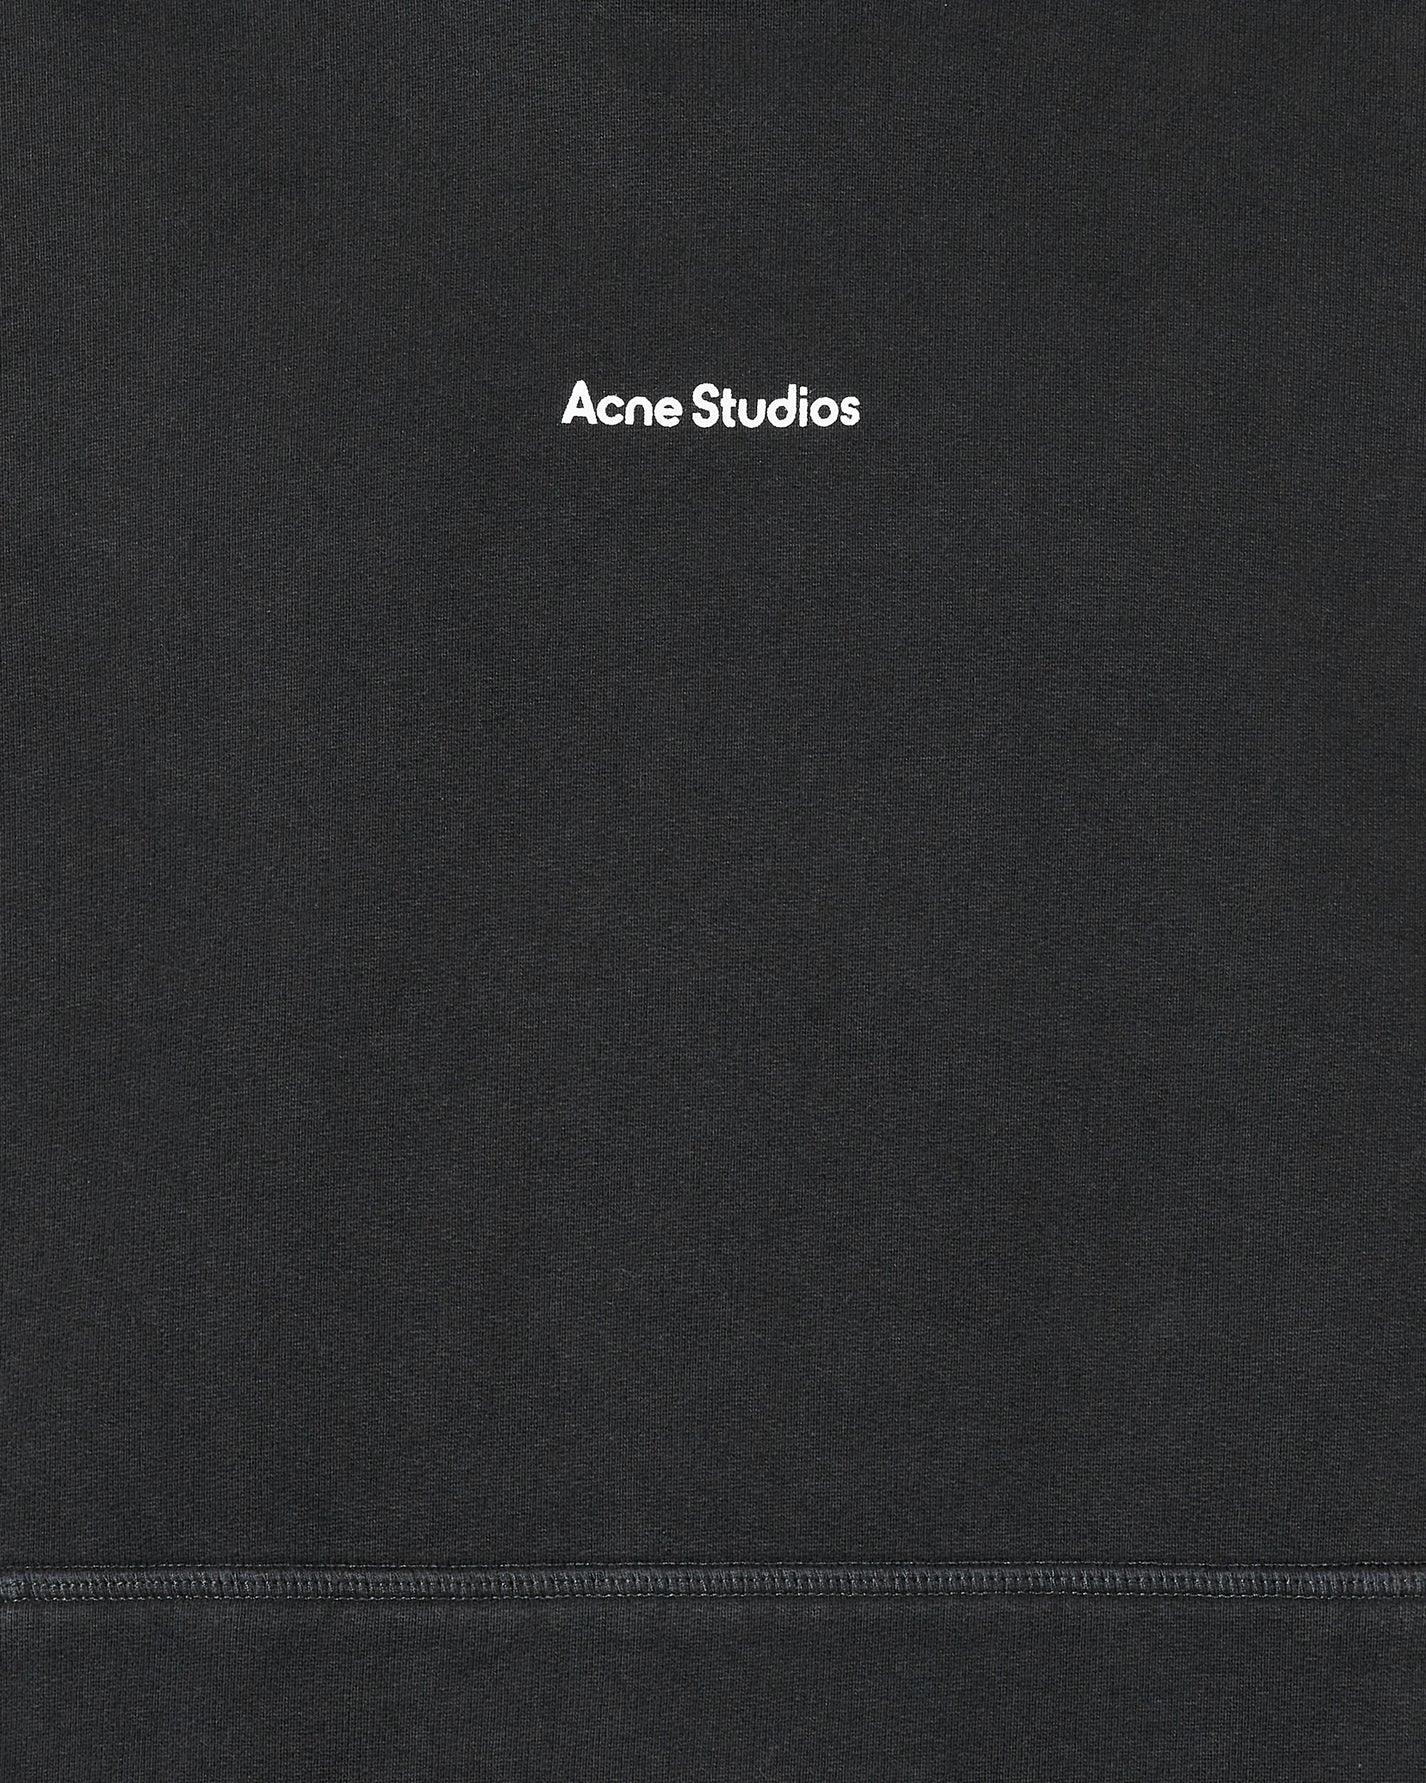 Acne Studios Hooded Black Sweatshirts Hoodies BI0182- 900